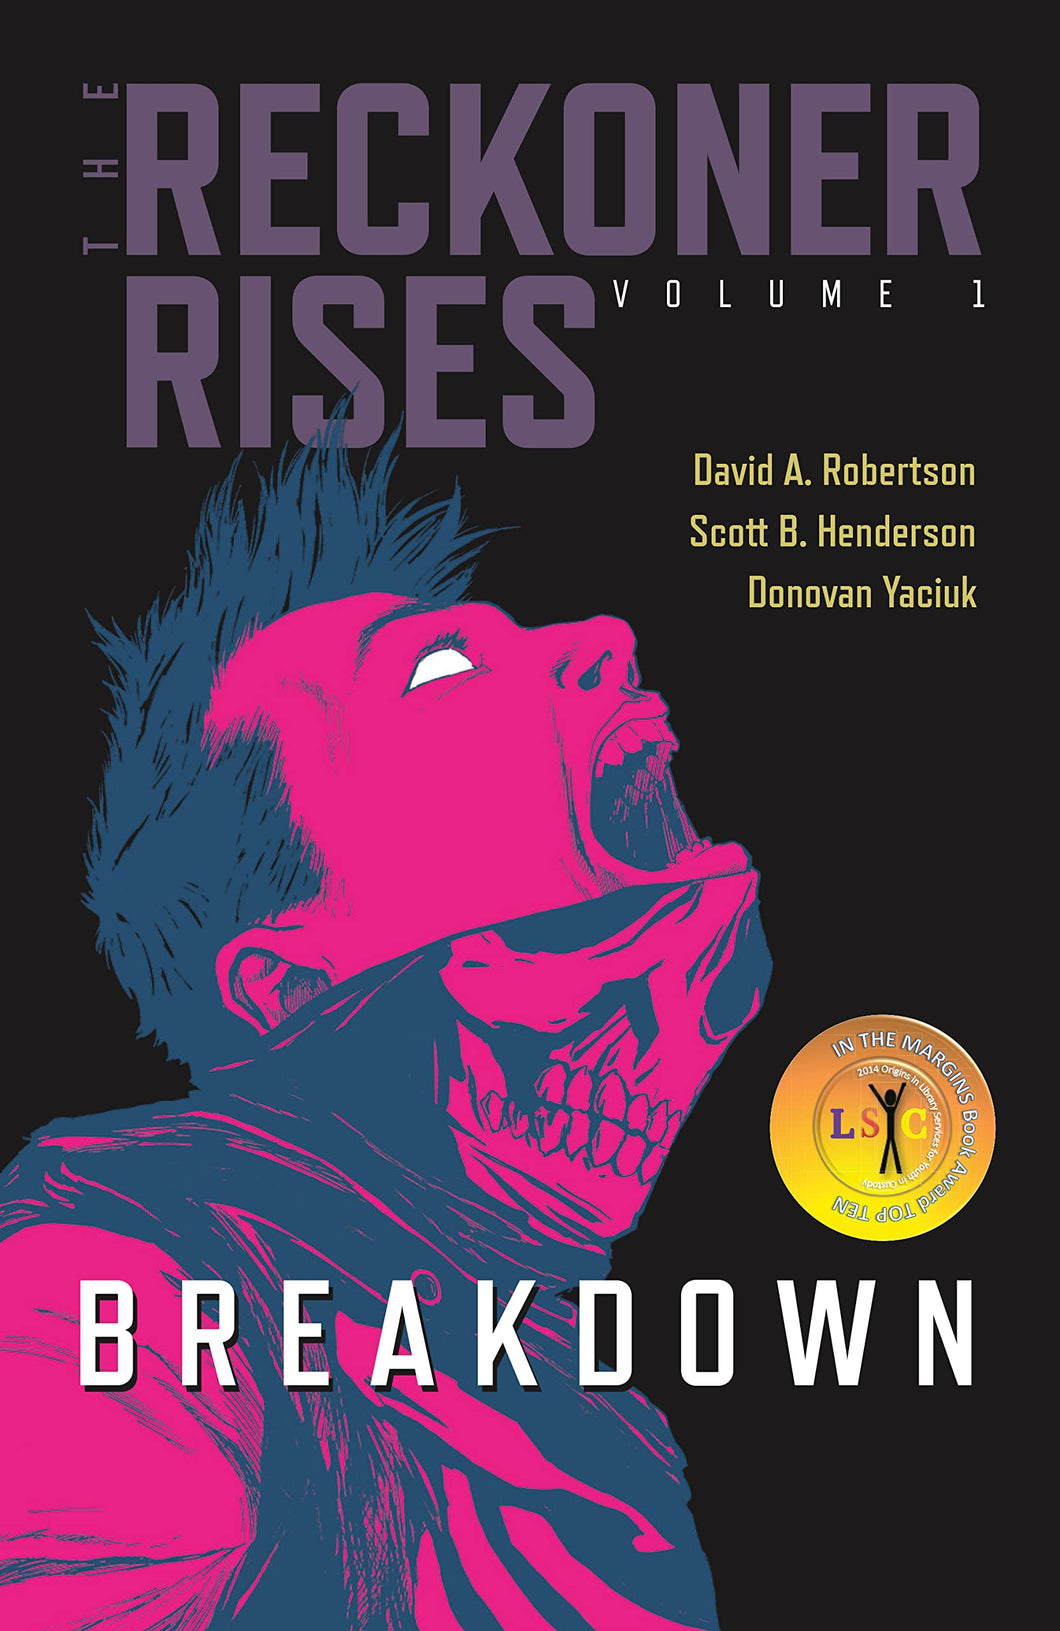 Breakdown [David A. Robertson]